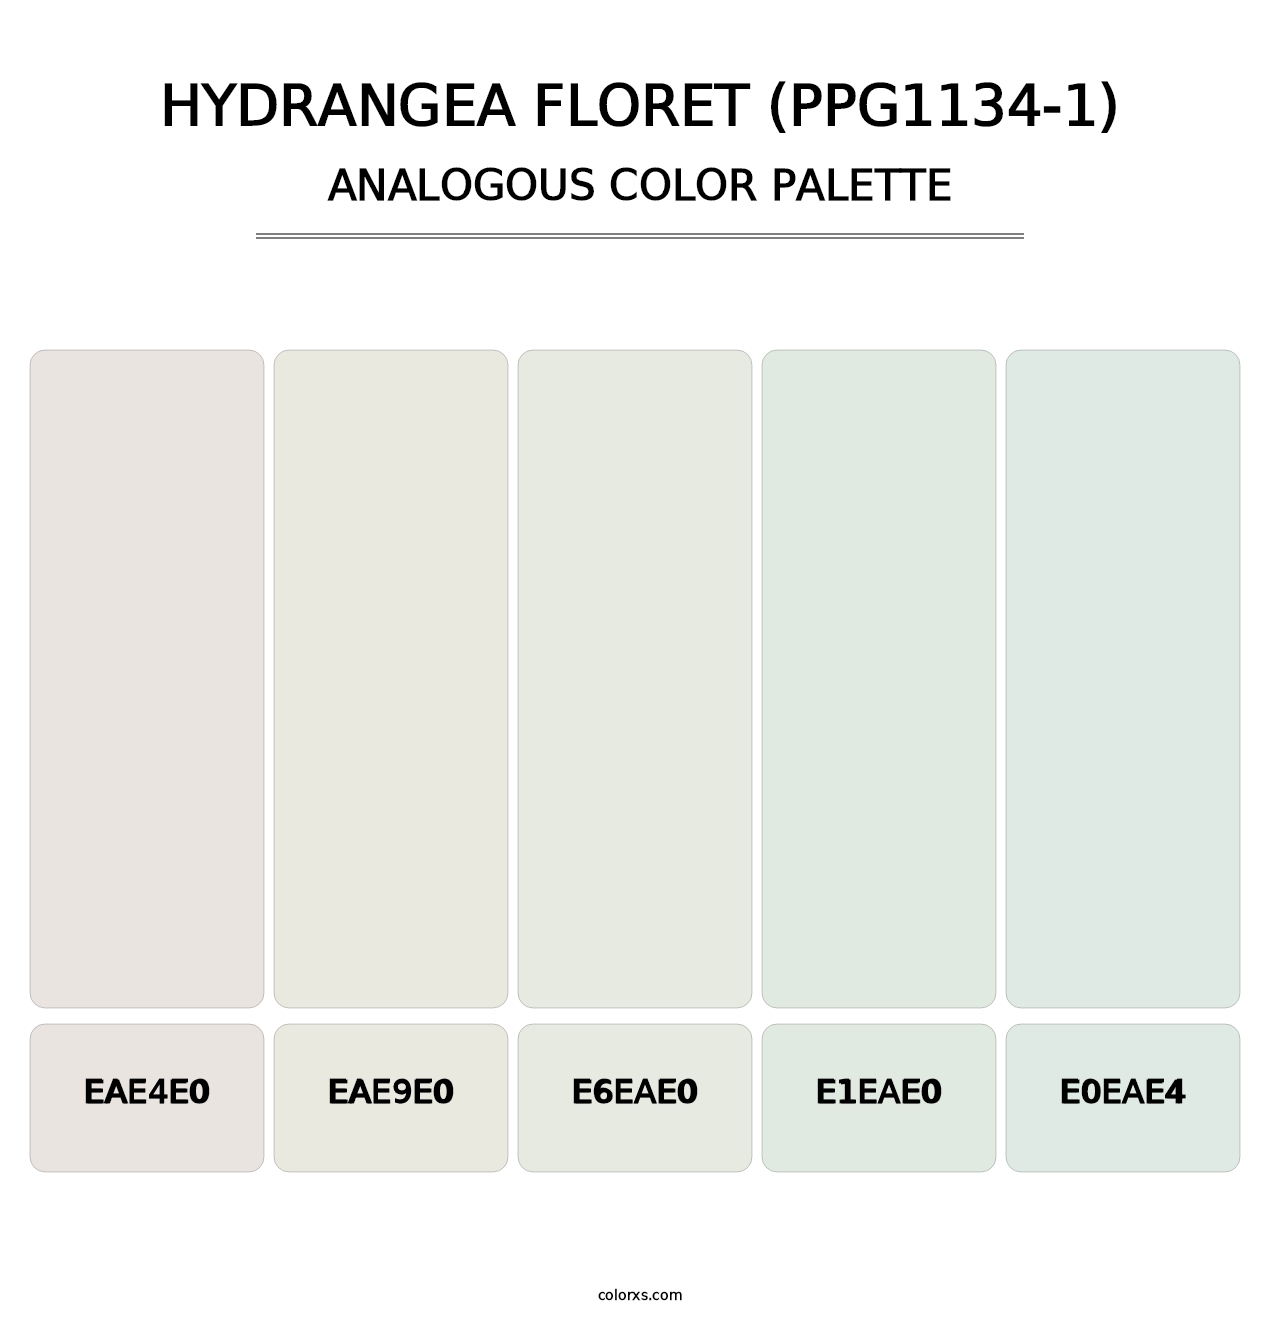 Hydrangea Floret (PPG1134-1) - Analogous Color Palette